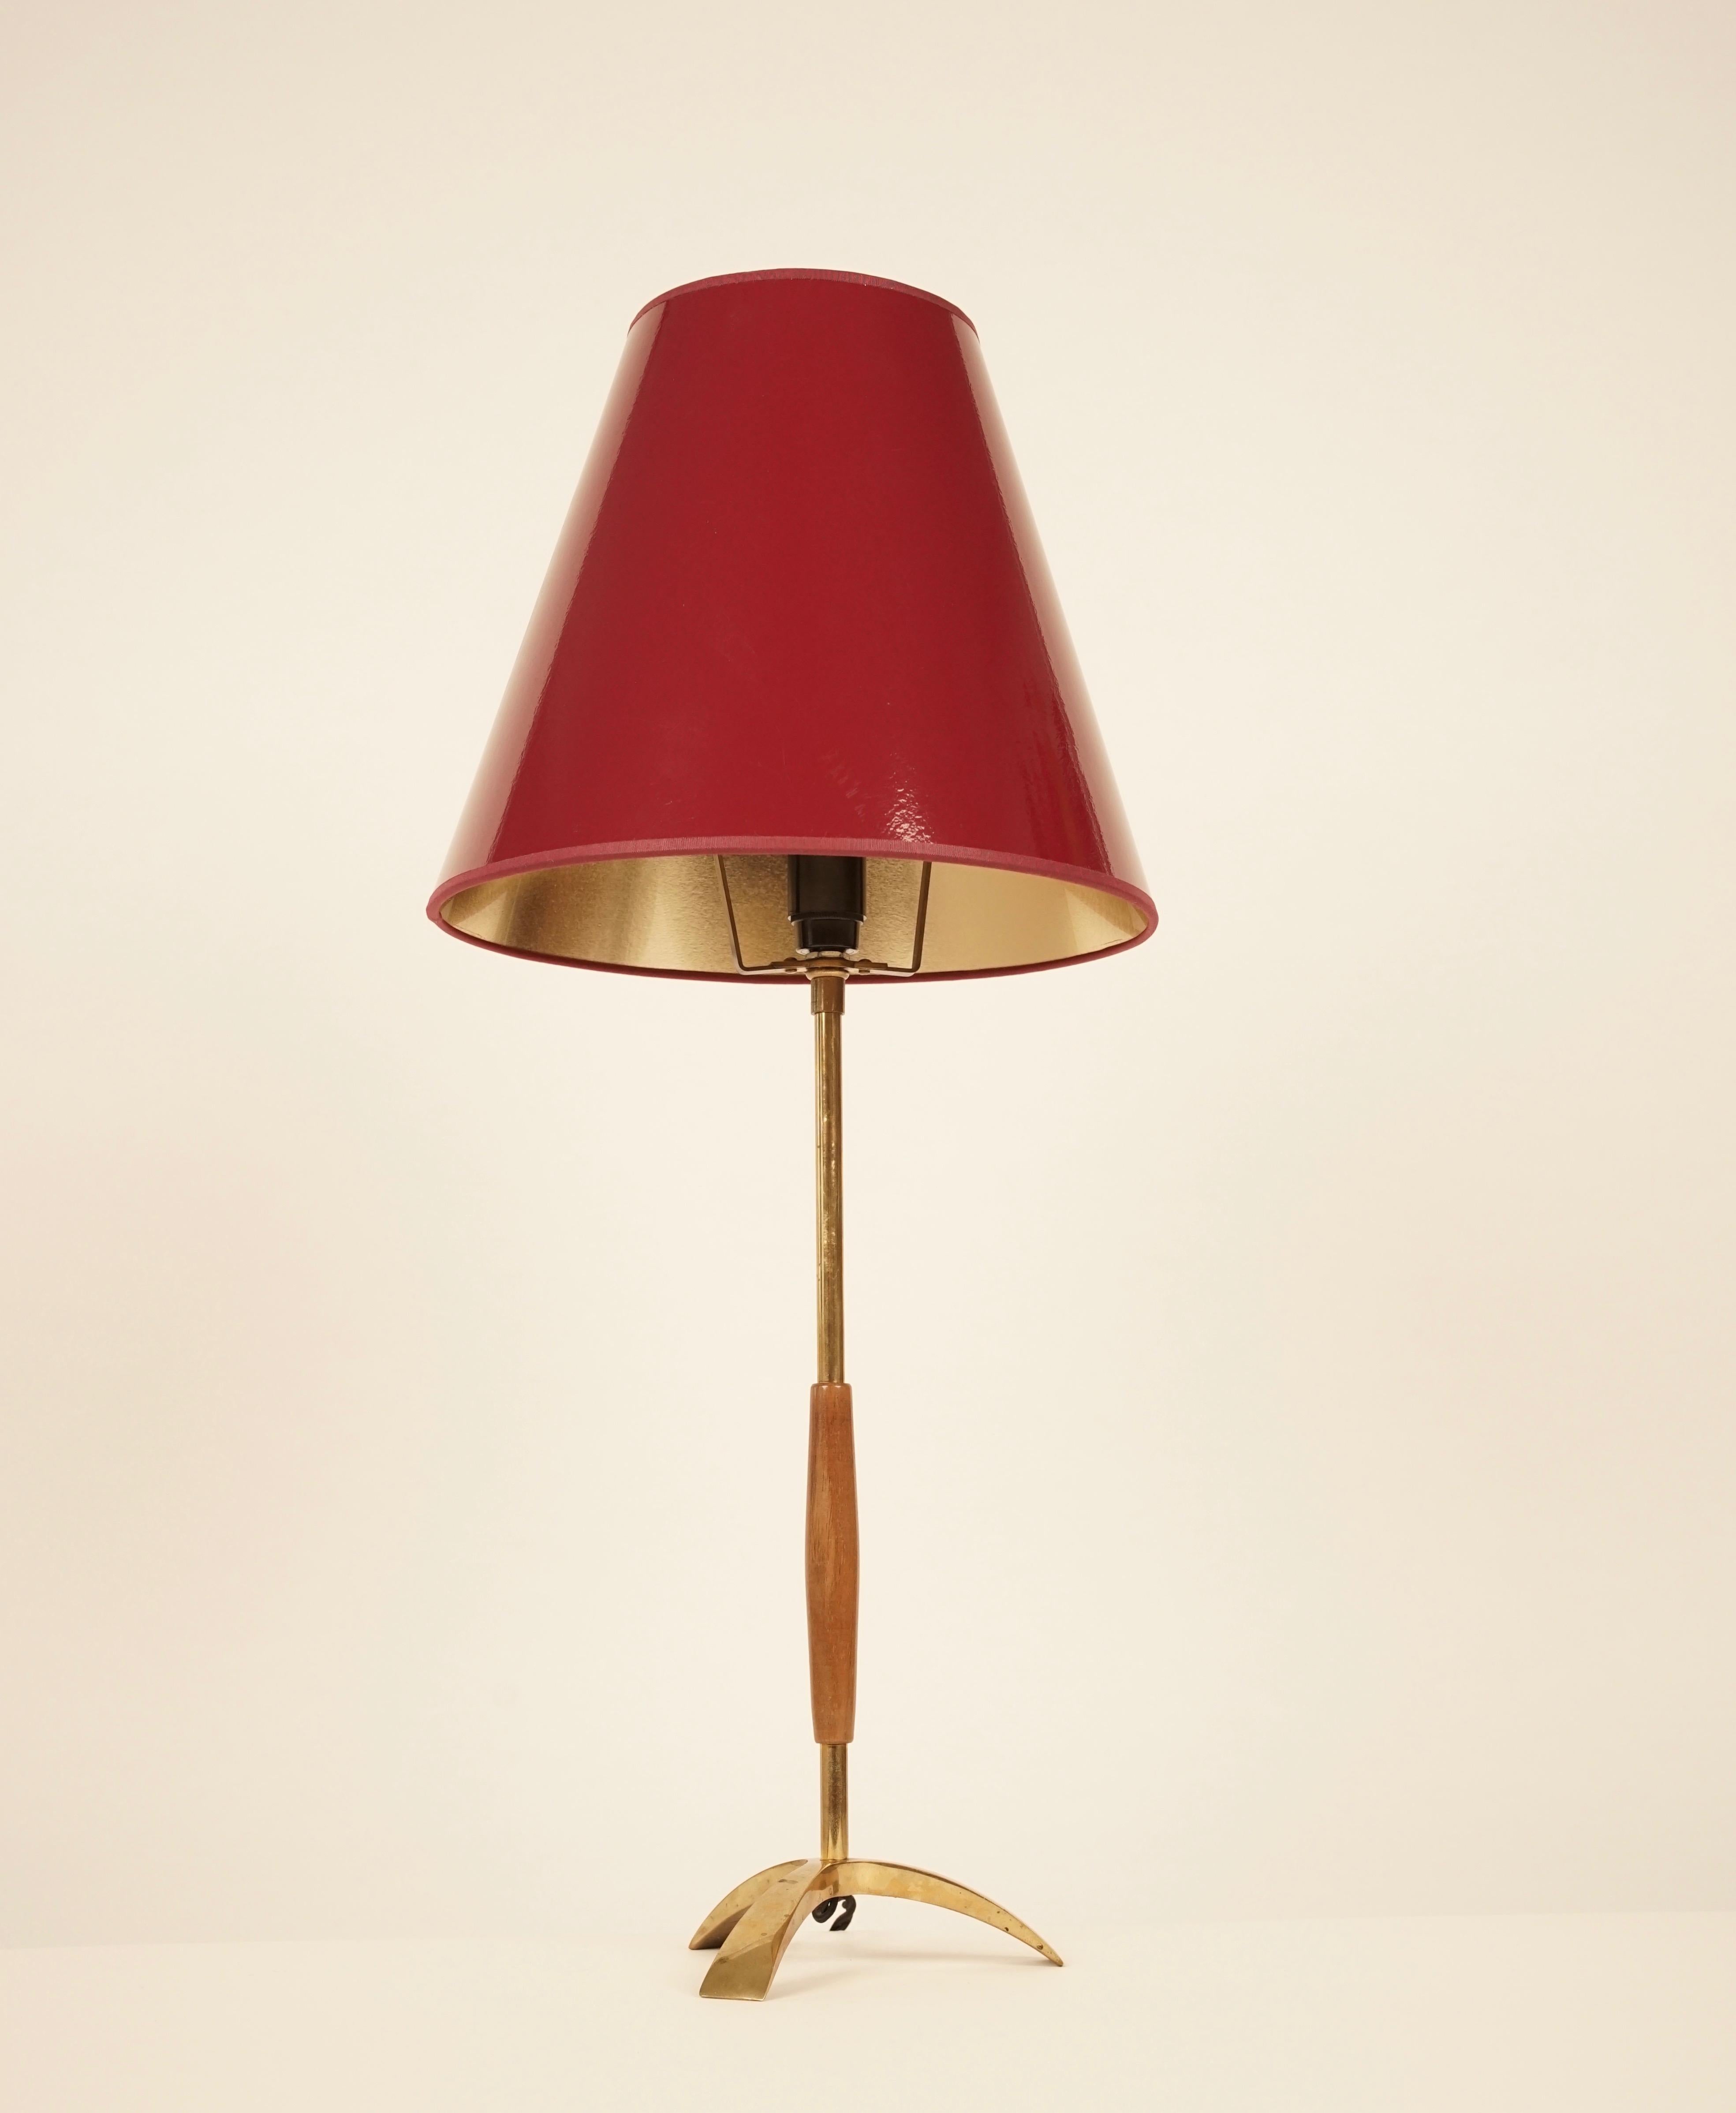 Eine hohe, einfache und elegante Tischleuchte von Kalmar. Hergestellt aus Messing und Holz. Die Lampe hat jetzt einen neuen weinroten Schirm mit reflektierendem Goldfutter. 
Das goldene Futter setzt schöne Akzente im Licht.